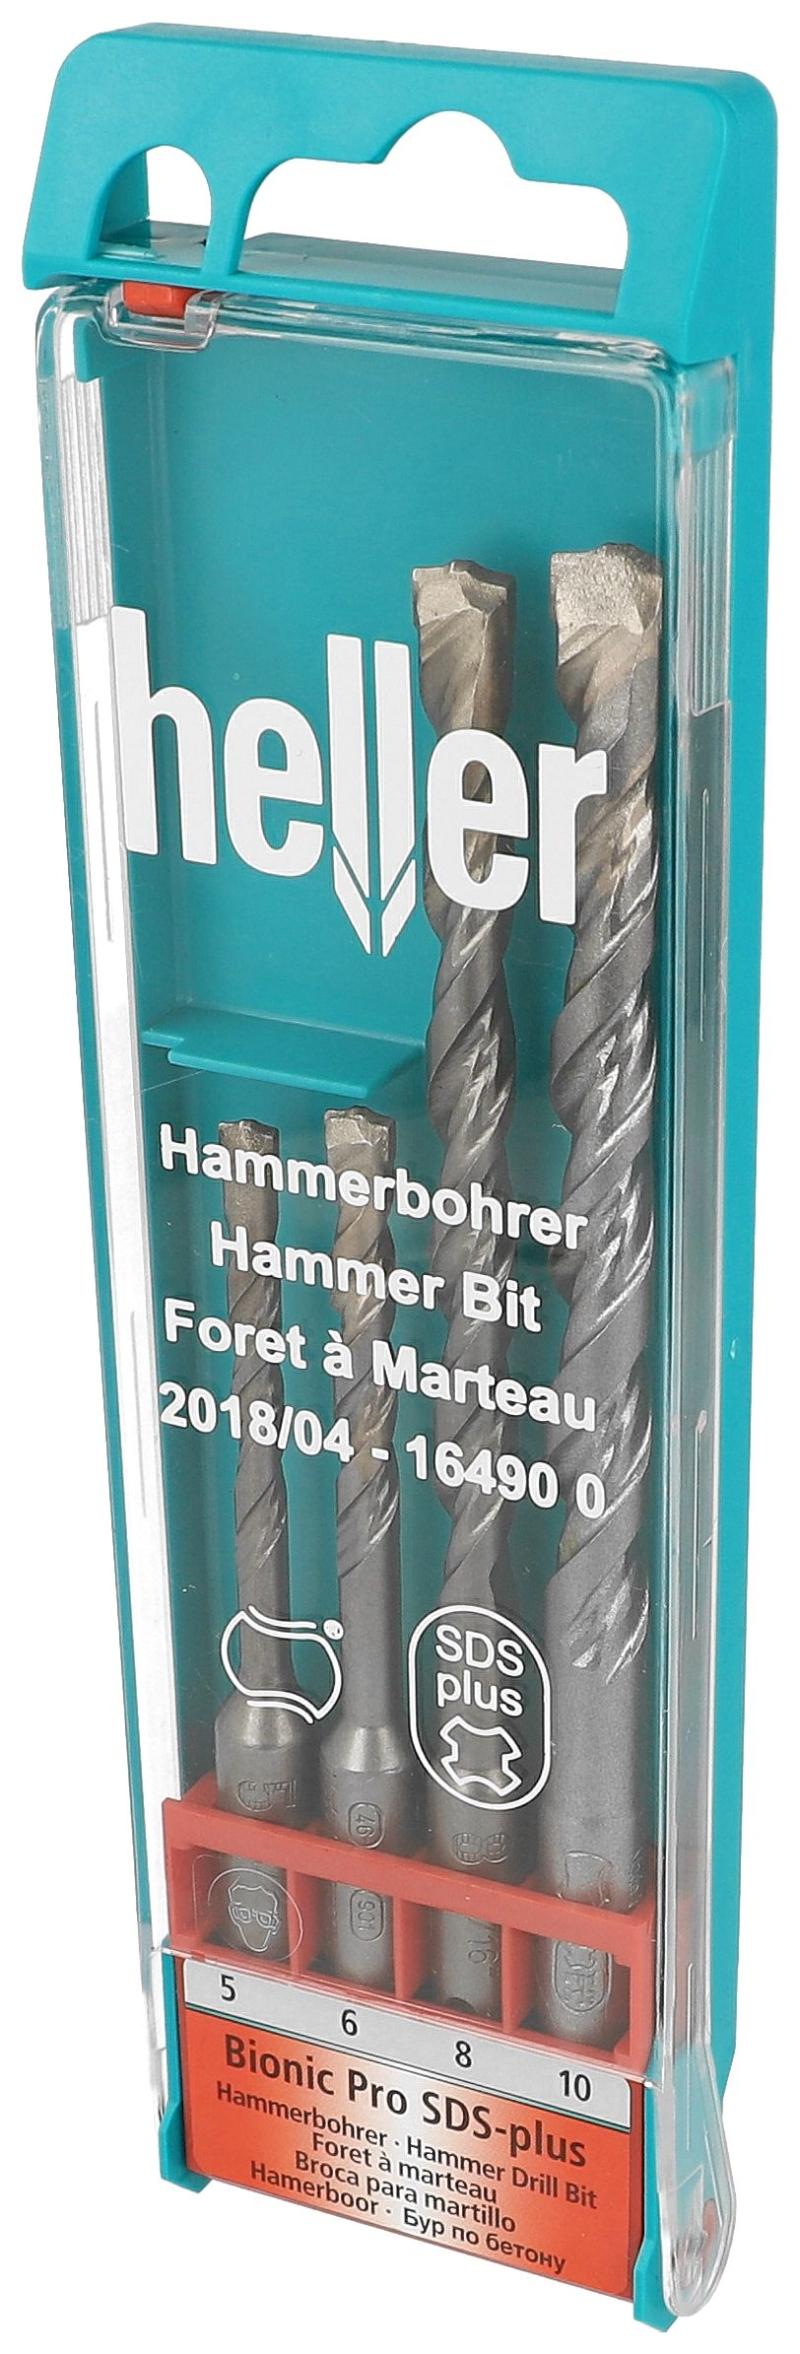 Heller hammer drill SDS set 5-10 mm.